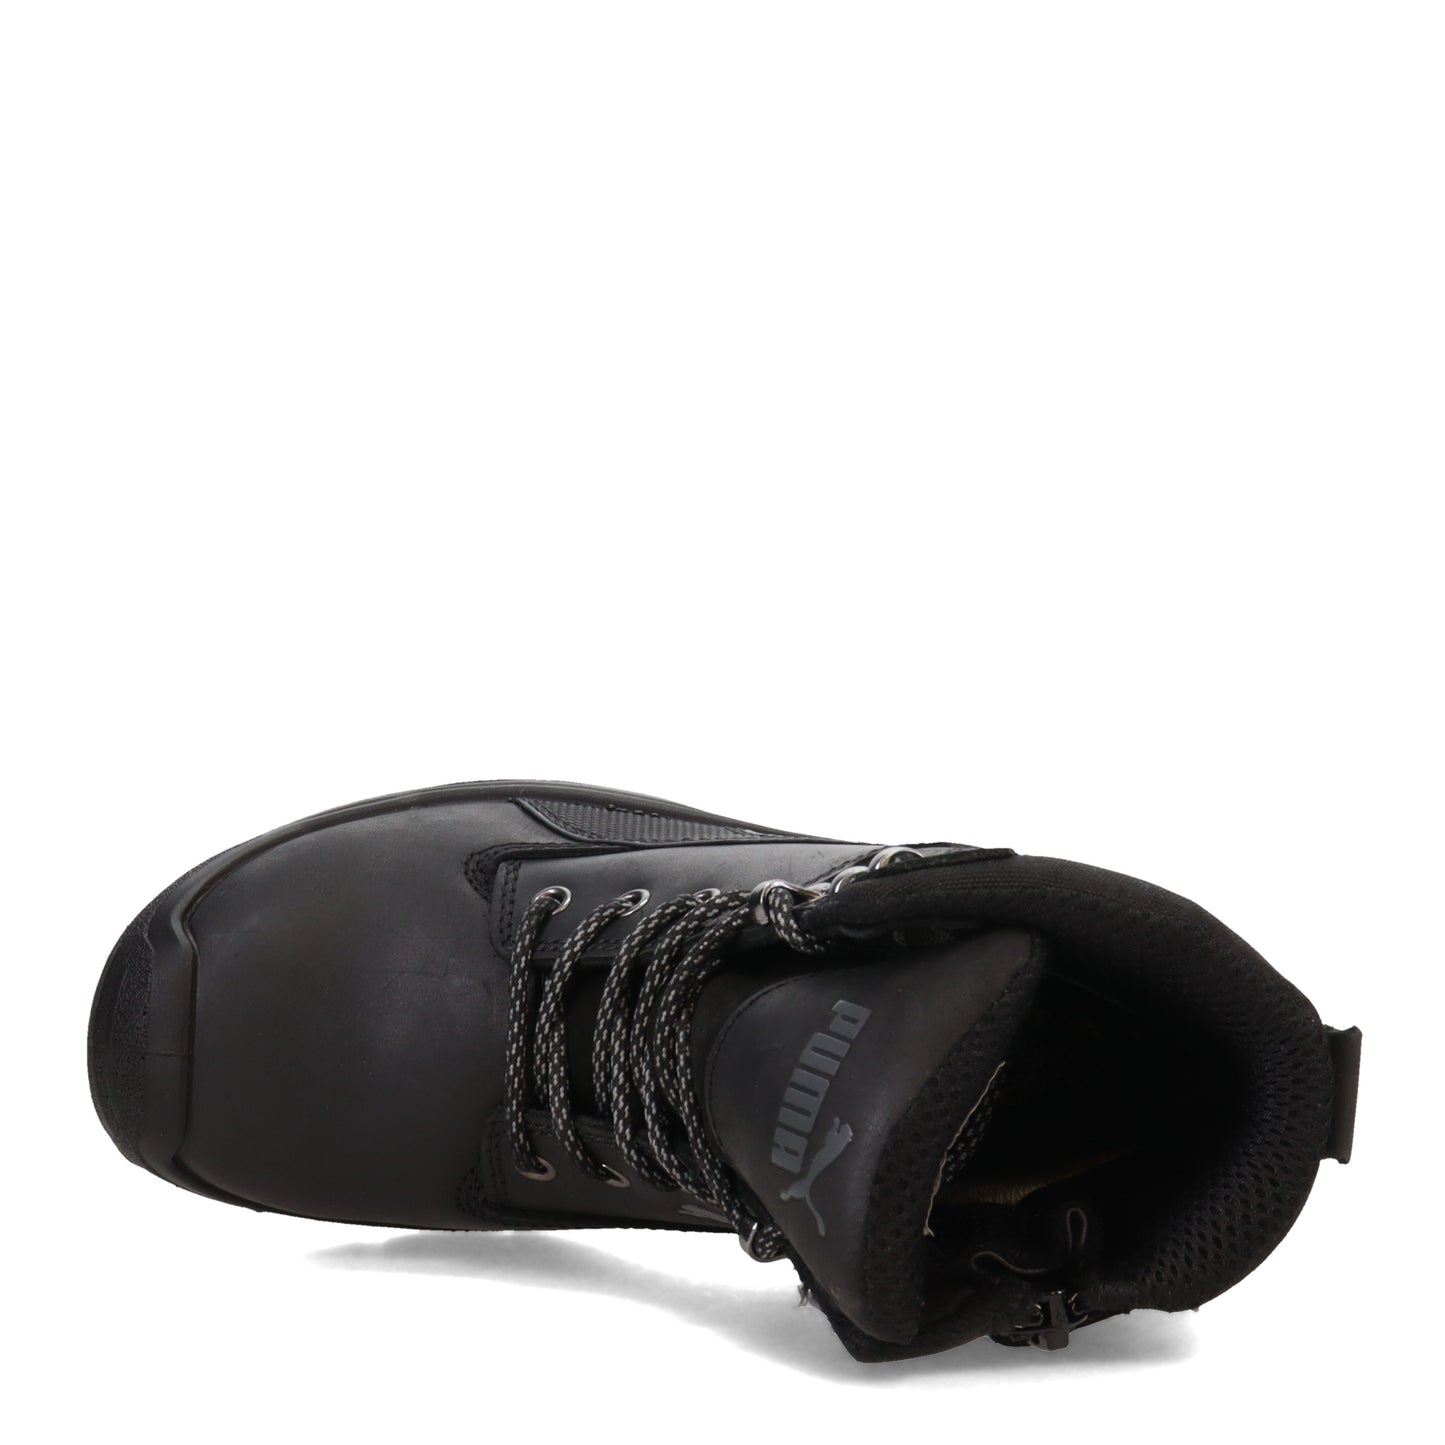 Peltz Shoes  Women's PUMA Conquest 7 Composite Toe SR WP EH Work Boot BLACK 630675